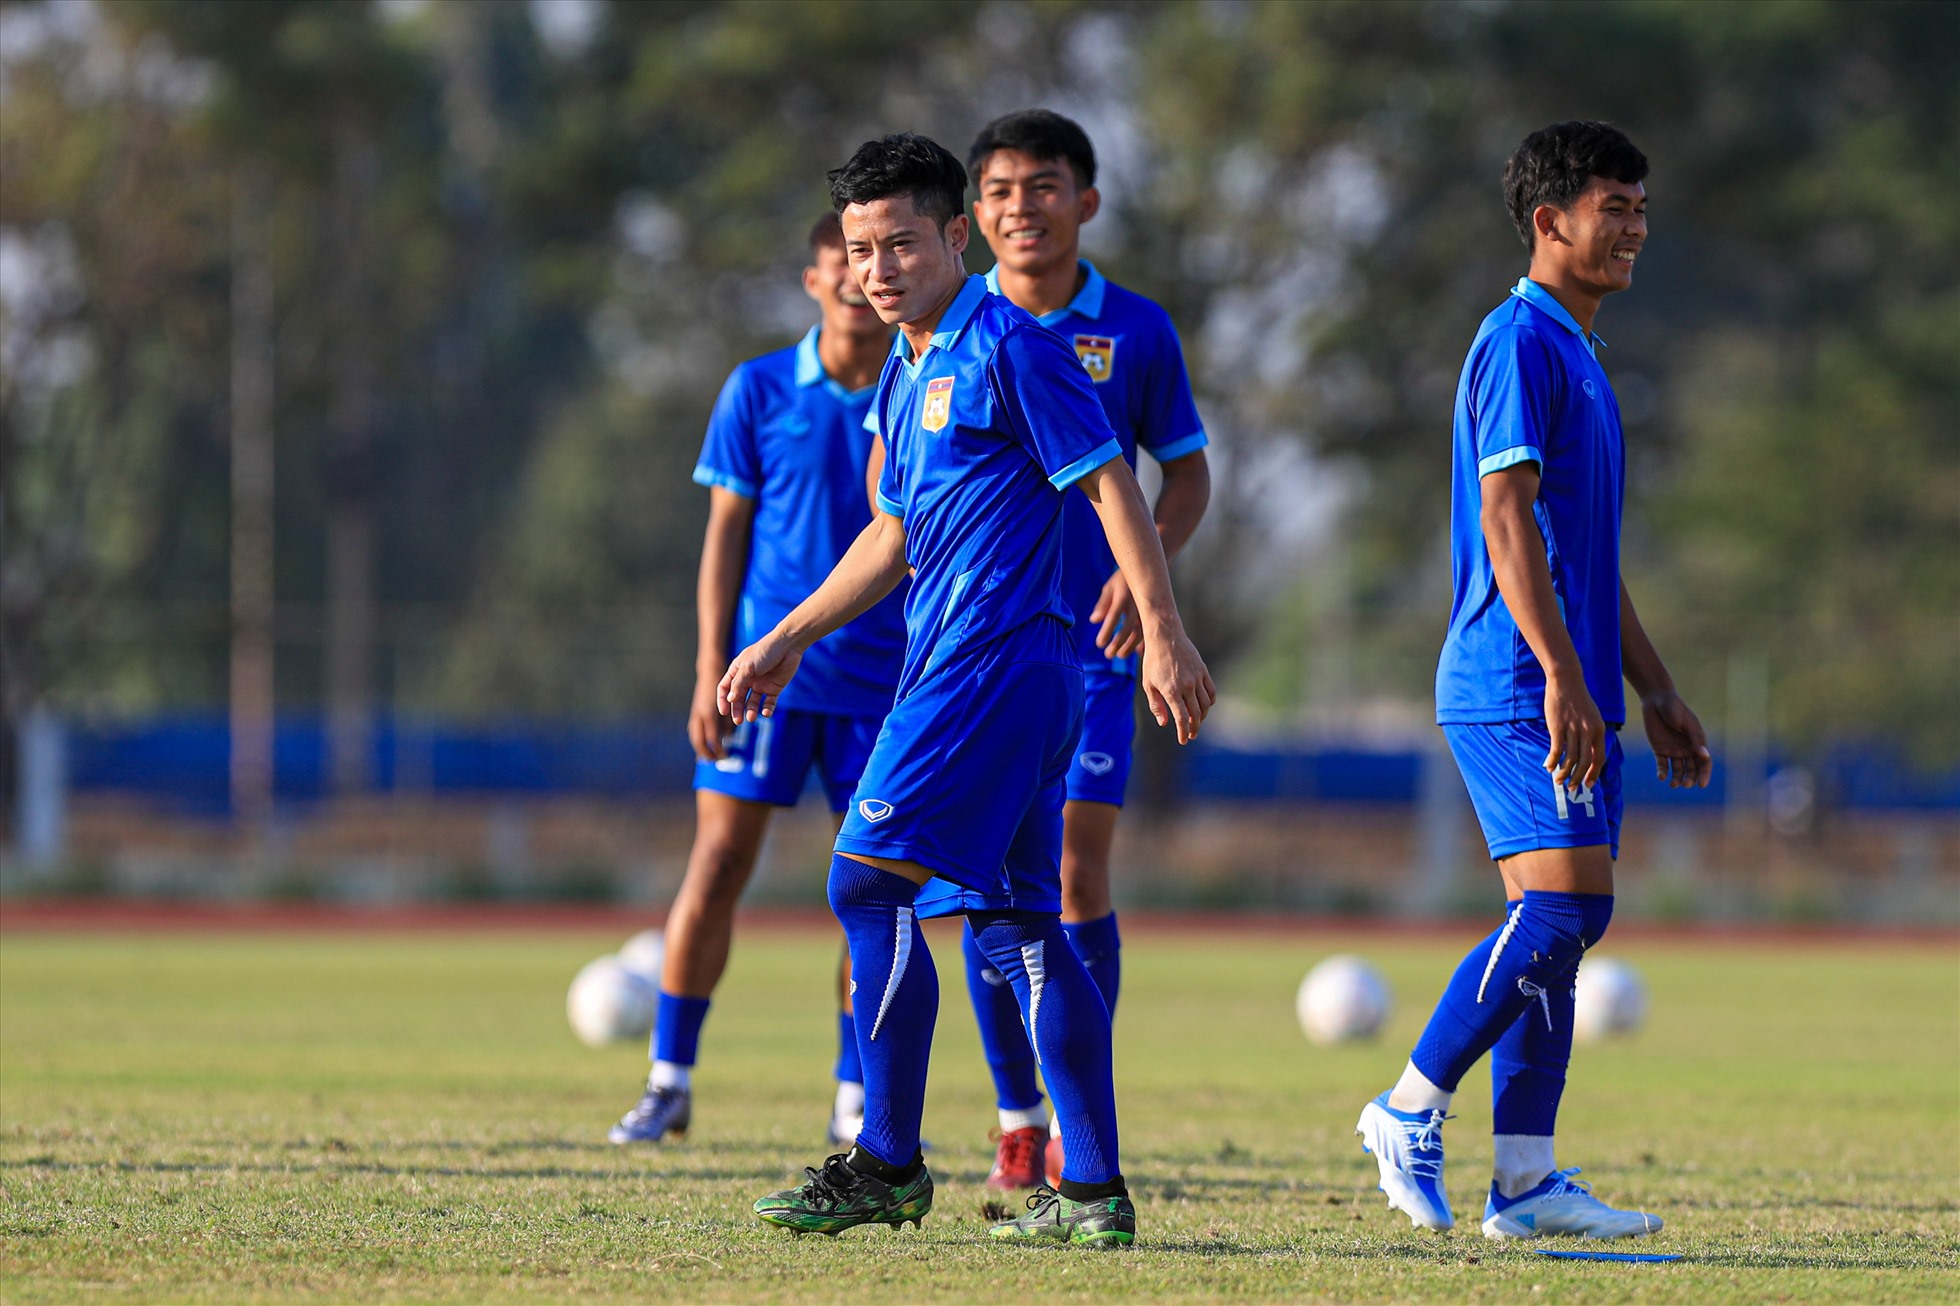 “Messi Lào” Vongchiengkham tươi cười khi tập luyện cùng các đàn em. Anh cùng Billy Ketkeophomphone và thủ môn là 3 cầu thủ trên 23 tuổi của đội tuyển Lào lúc này.